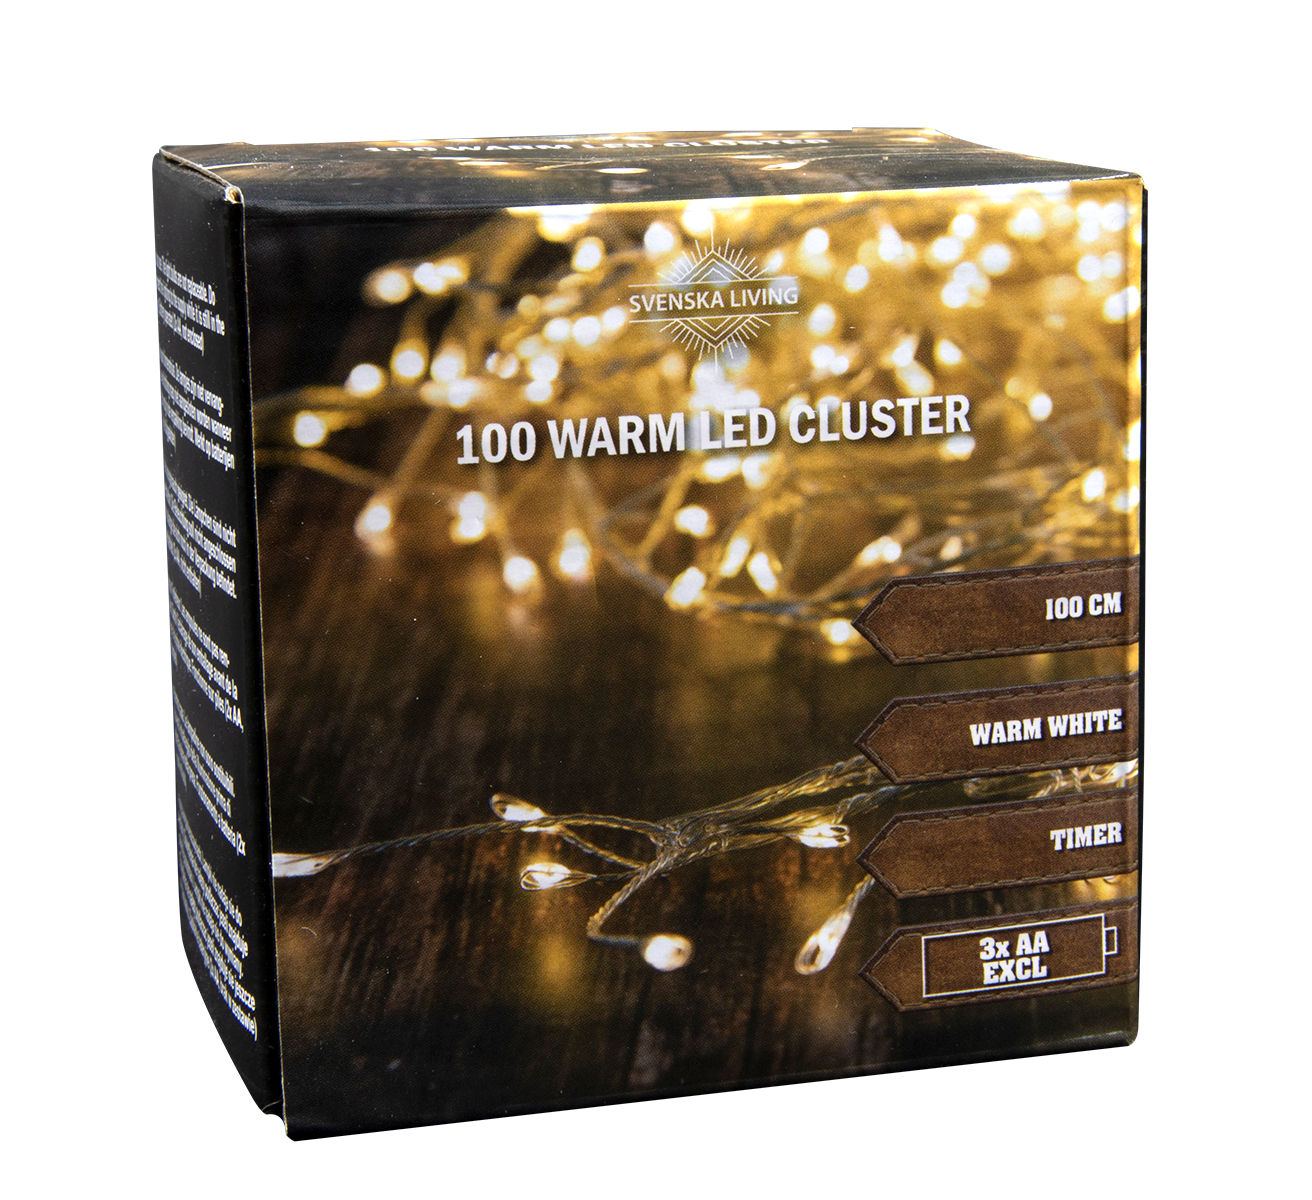 Lichterkette 100 Warm LED Cluster - 100cm / Timer 002